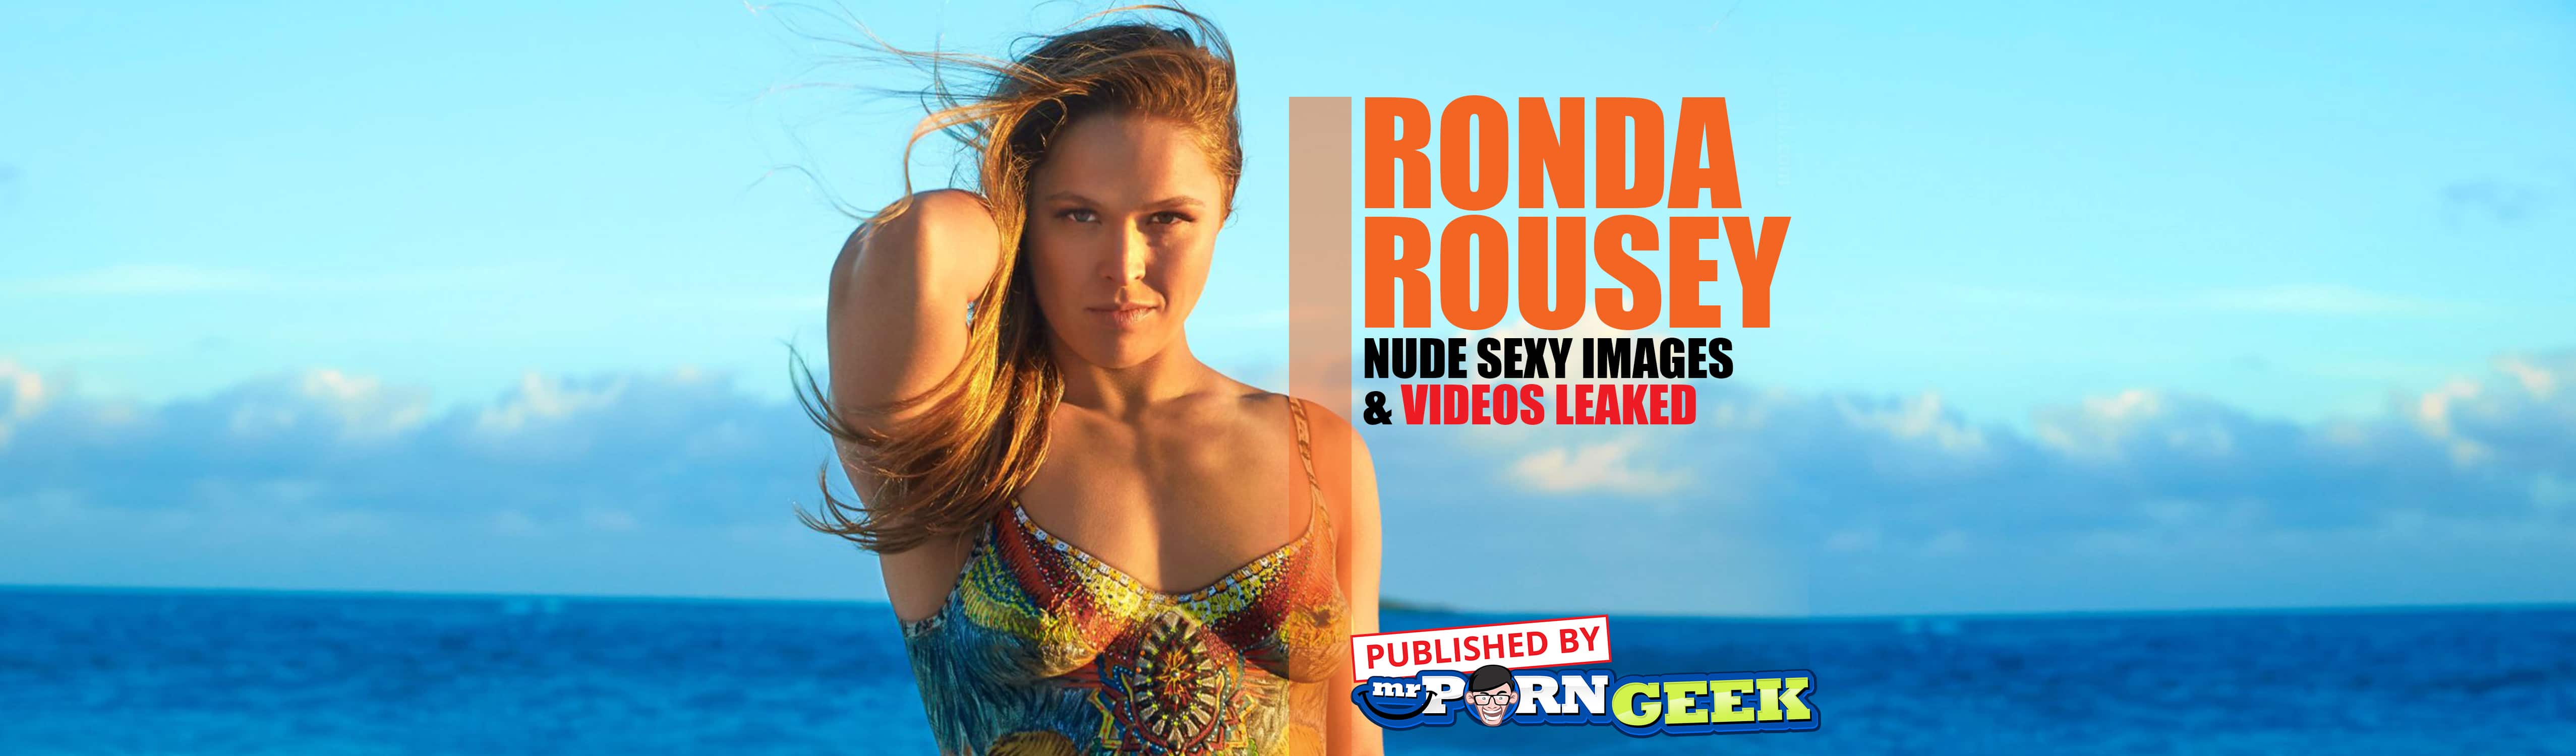 Rhonda rousey leaked